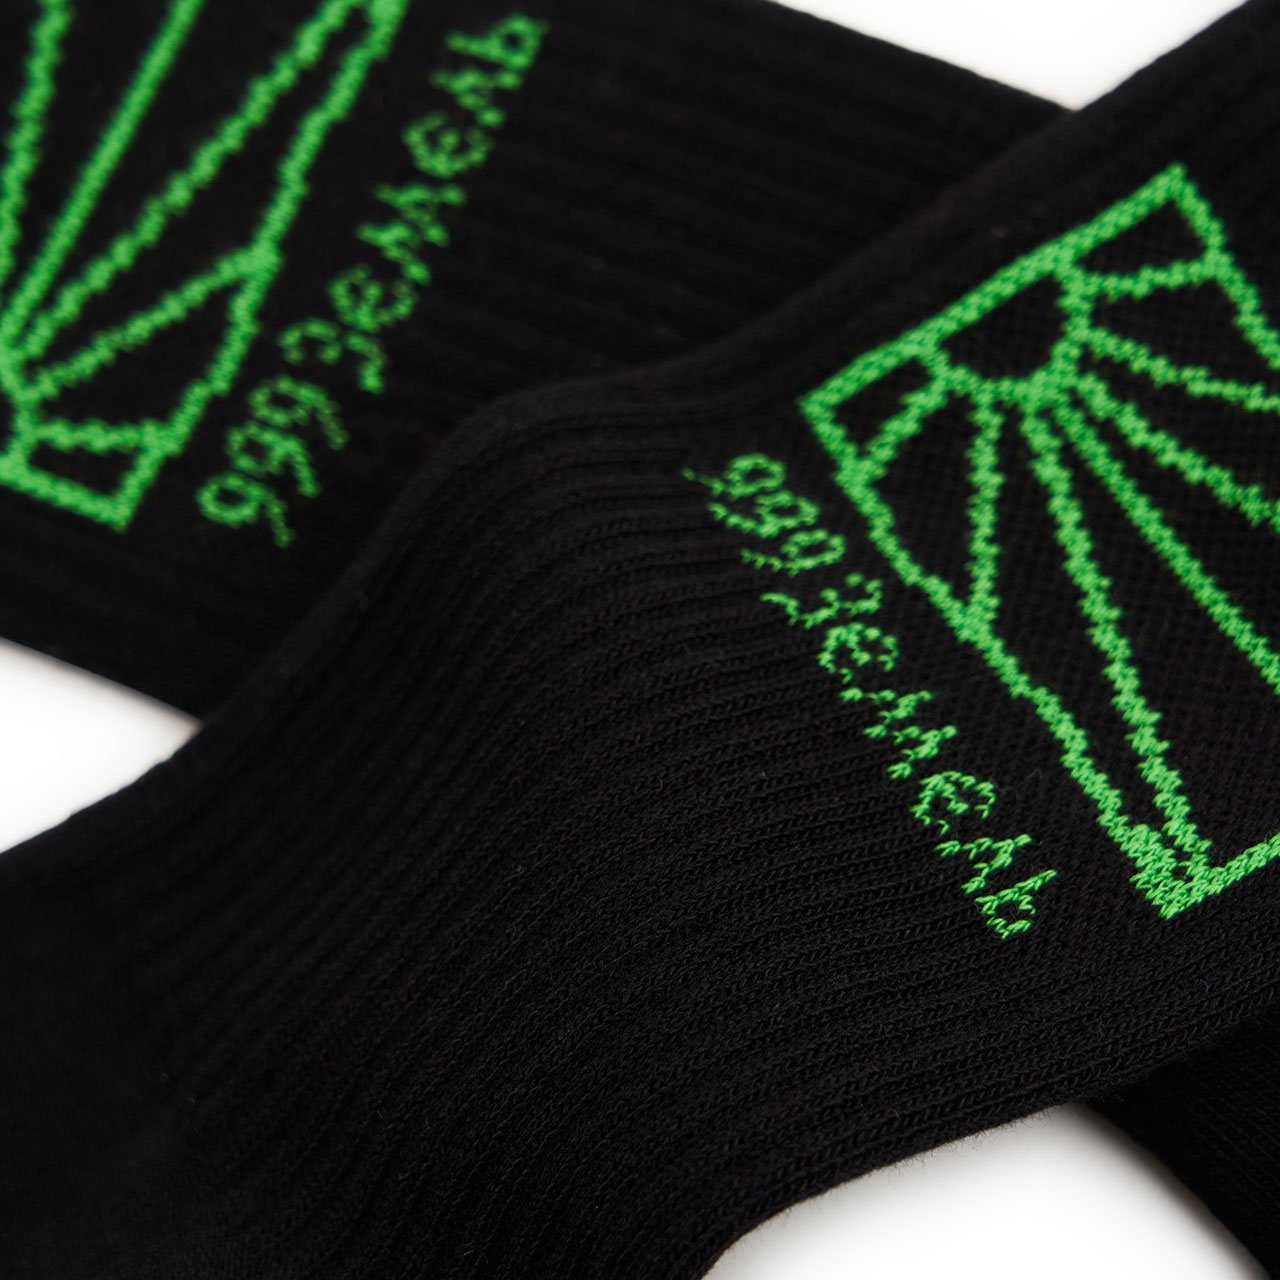 rassvet rassvet socks (black / green)